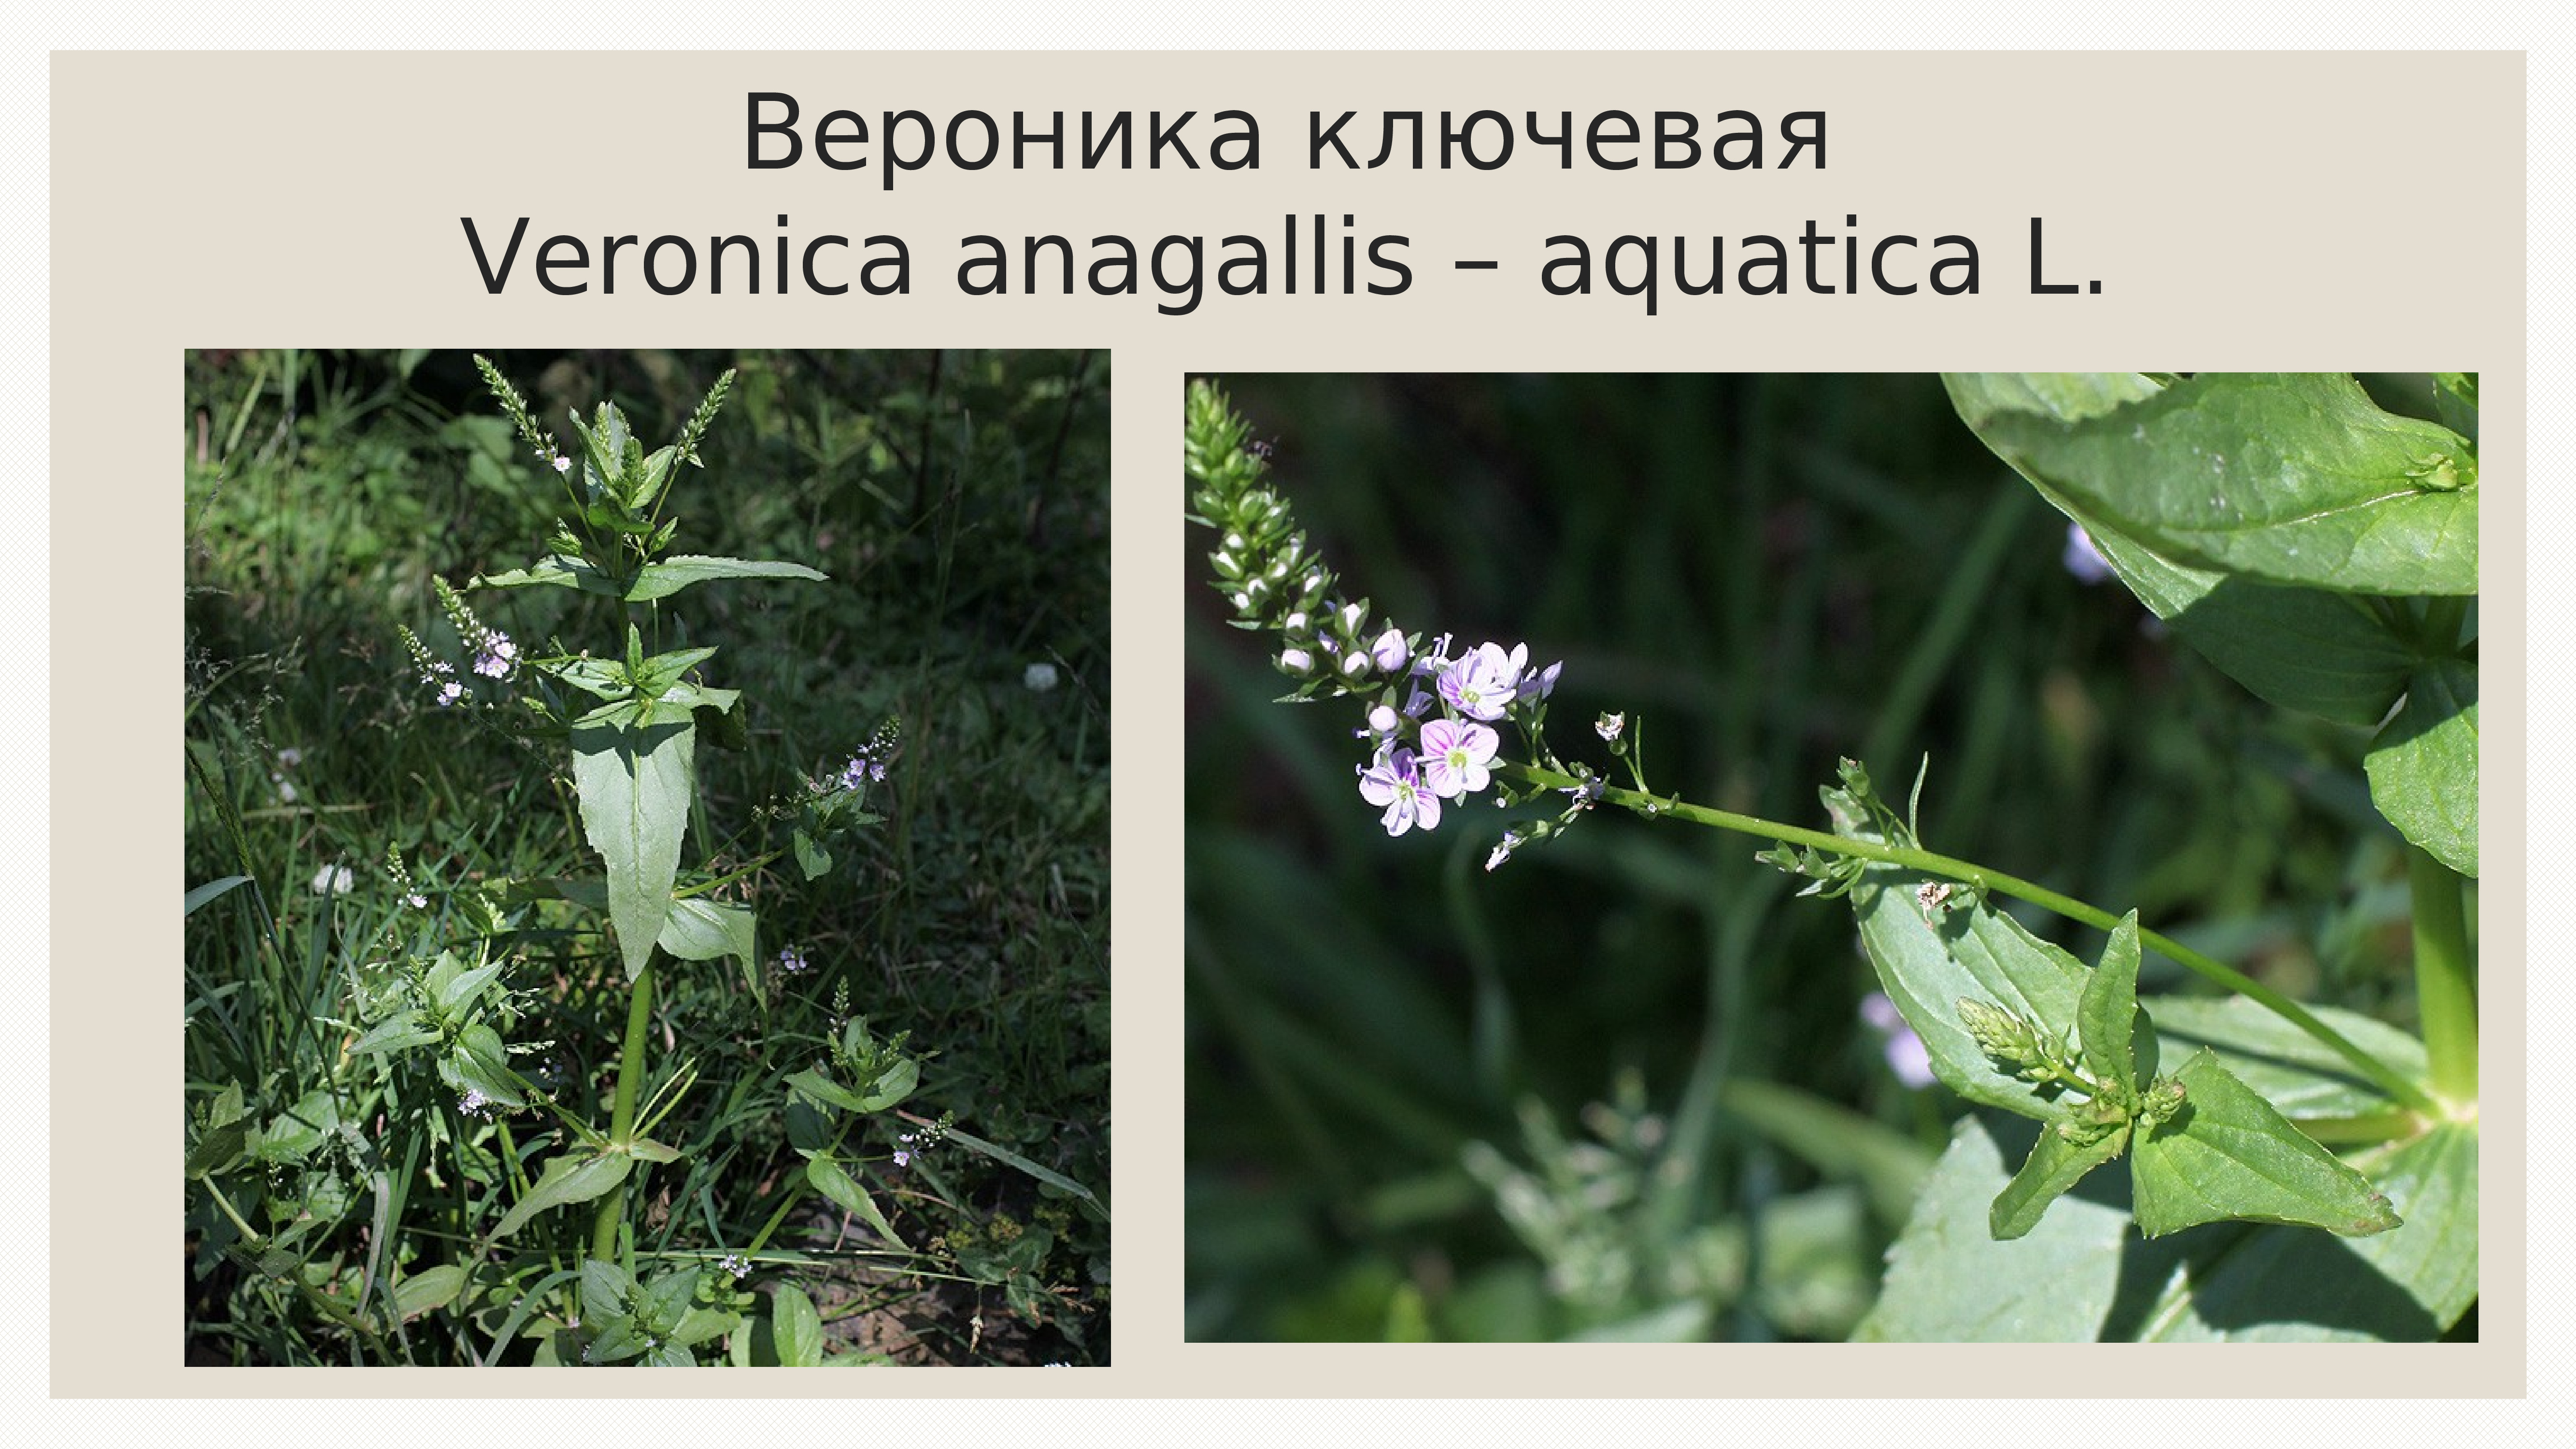 Montale aquatica. Veronica Anagallis-Aquatica. Veronica Anagallis-Aquatica l..